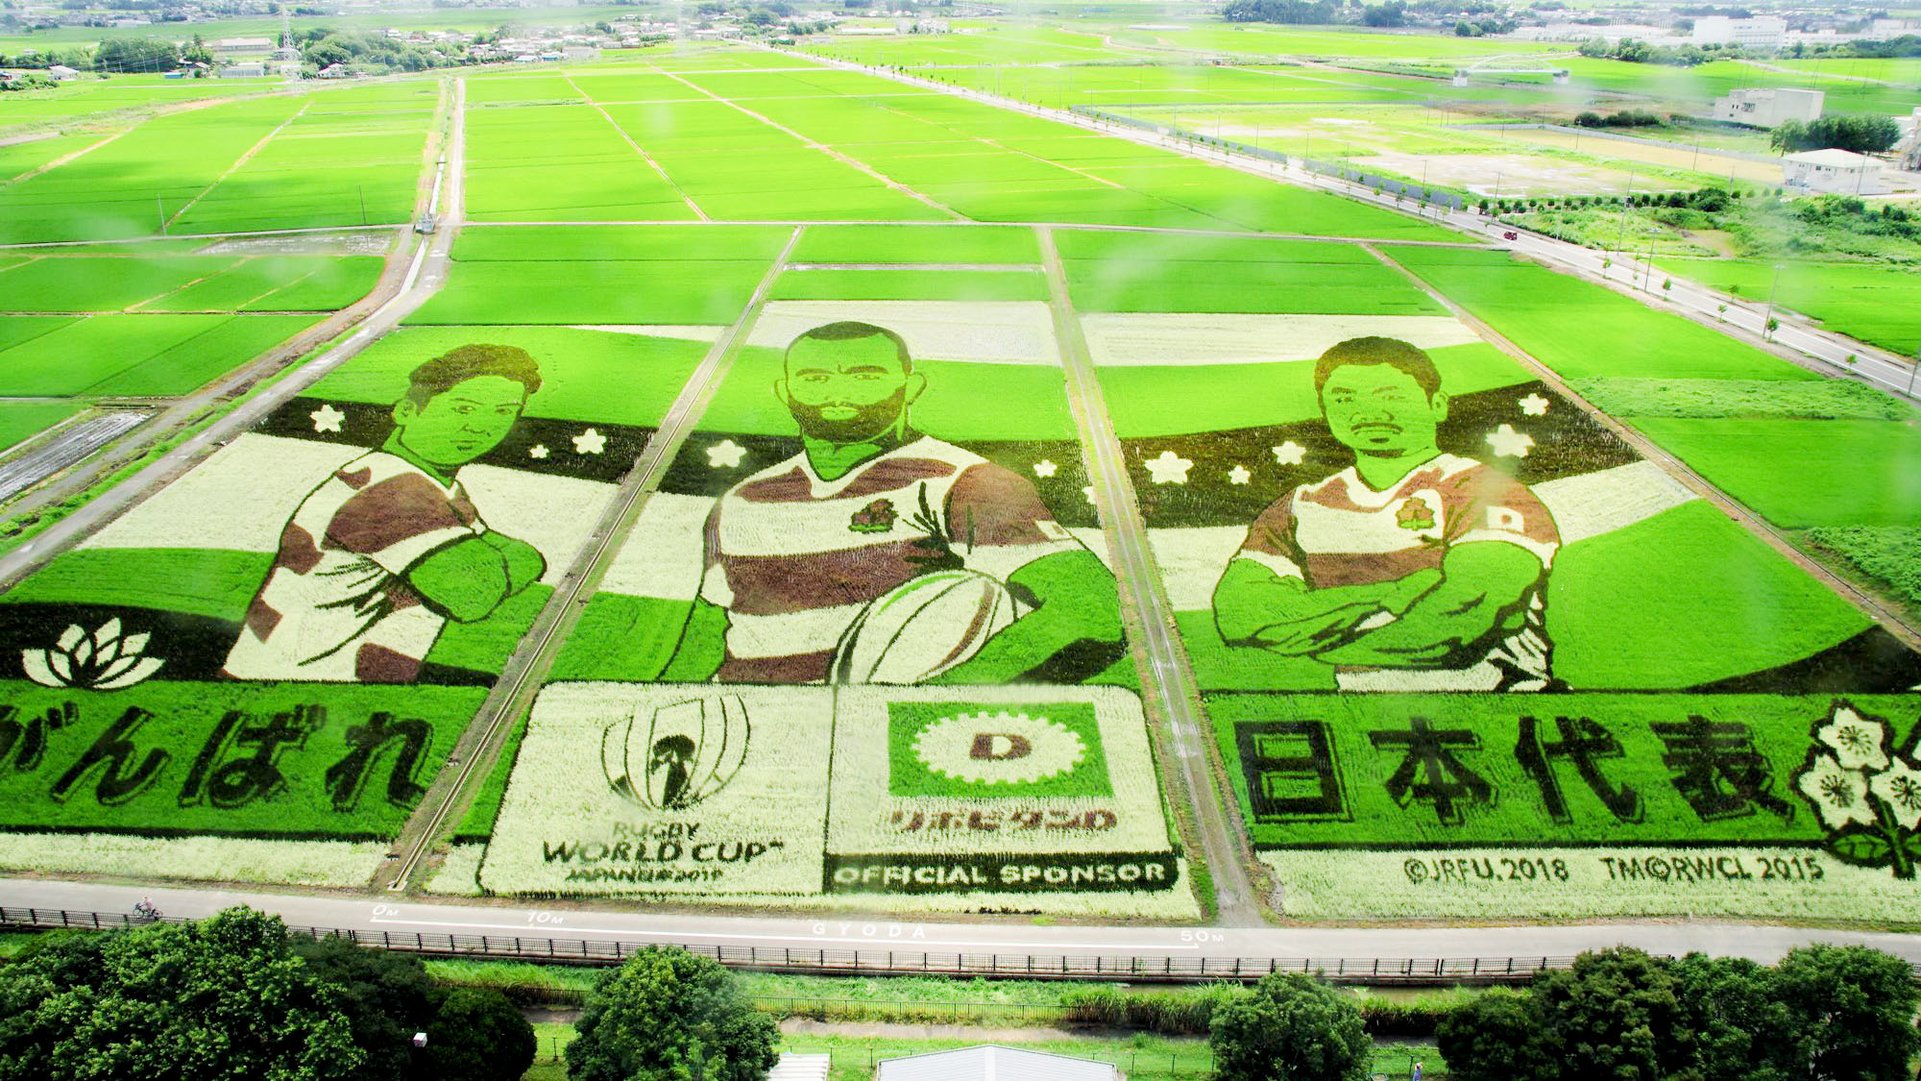 ナスカの地上絵超え 世界最大の 田んぼアート は埼玉にあった Trip Editor